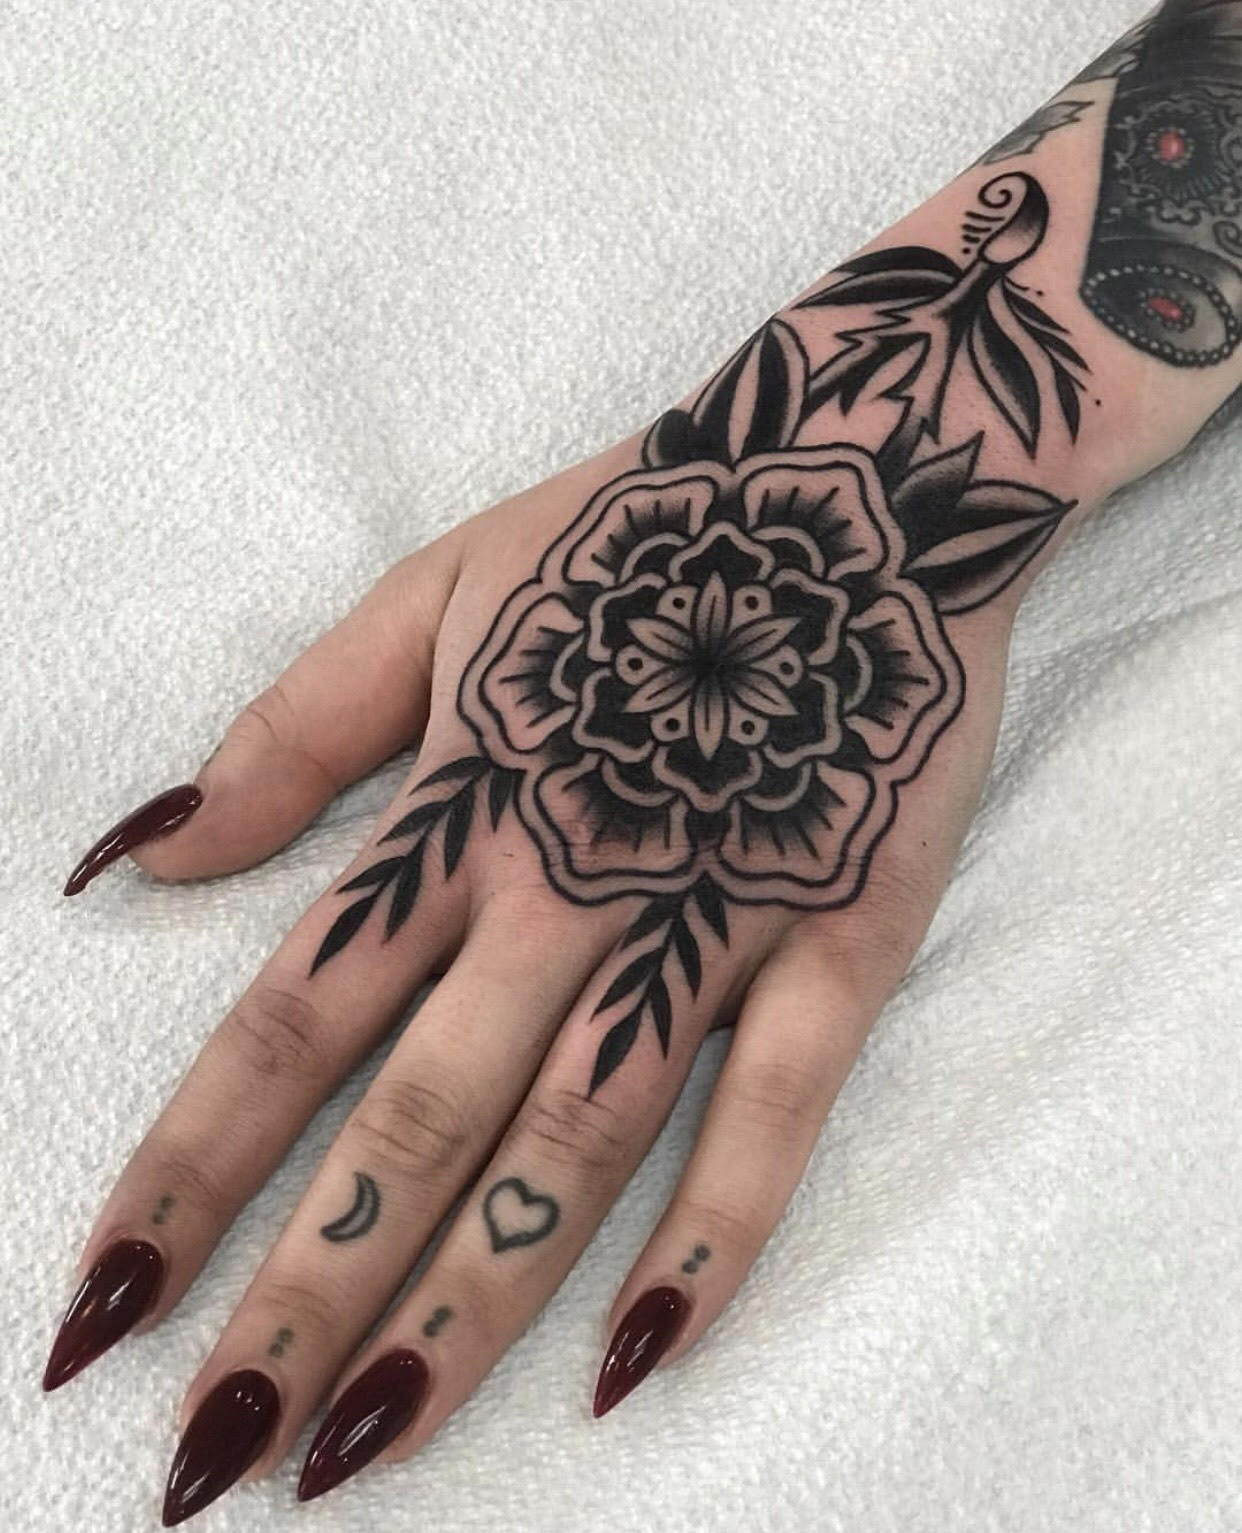 Blackwork hand tattoo by Tasha Tonks